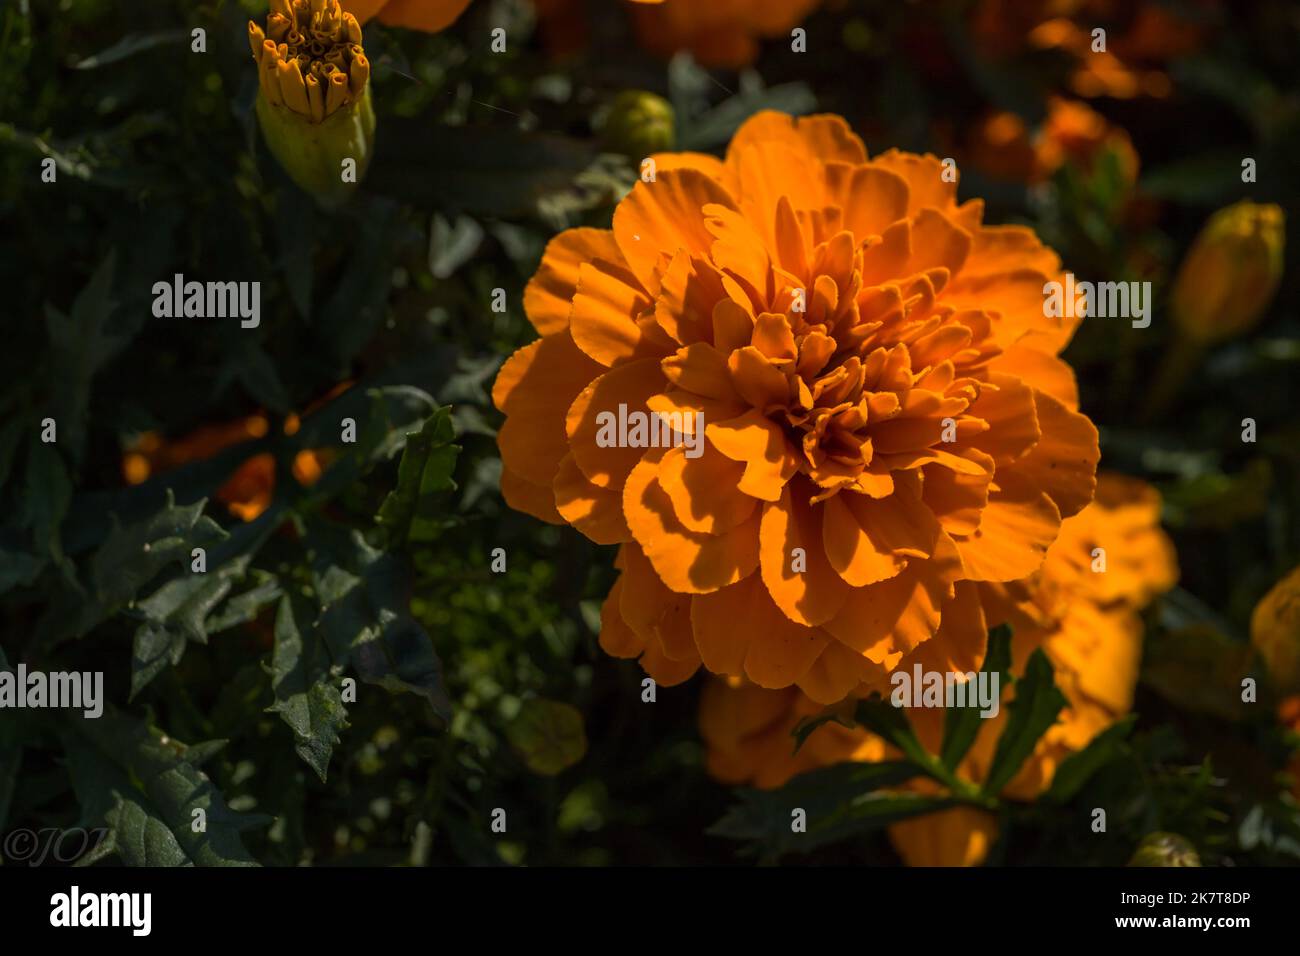 Fond floral - fleurs brillantes orange marigolds - fleur traditionnelle, qui est utilisé comme décoration, assaisonnement, médecine Banque D'Images